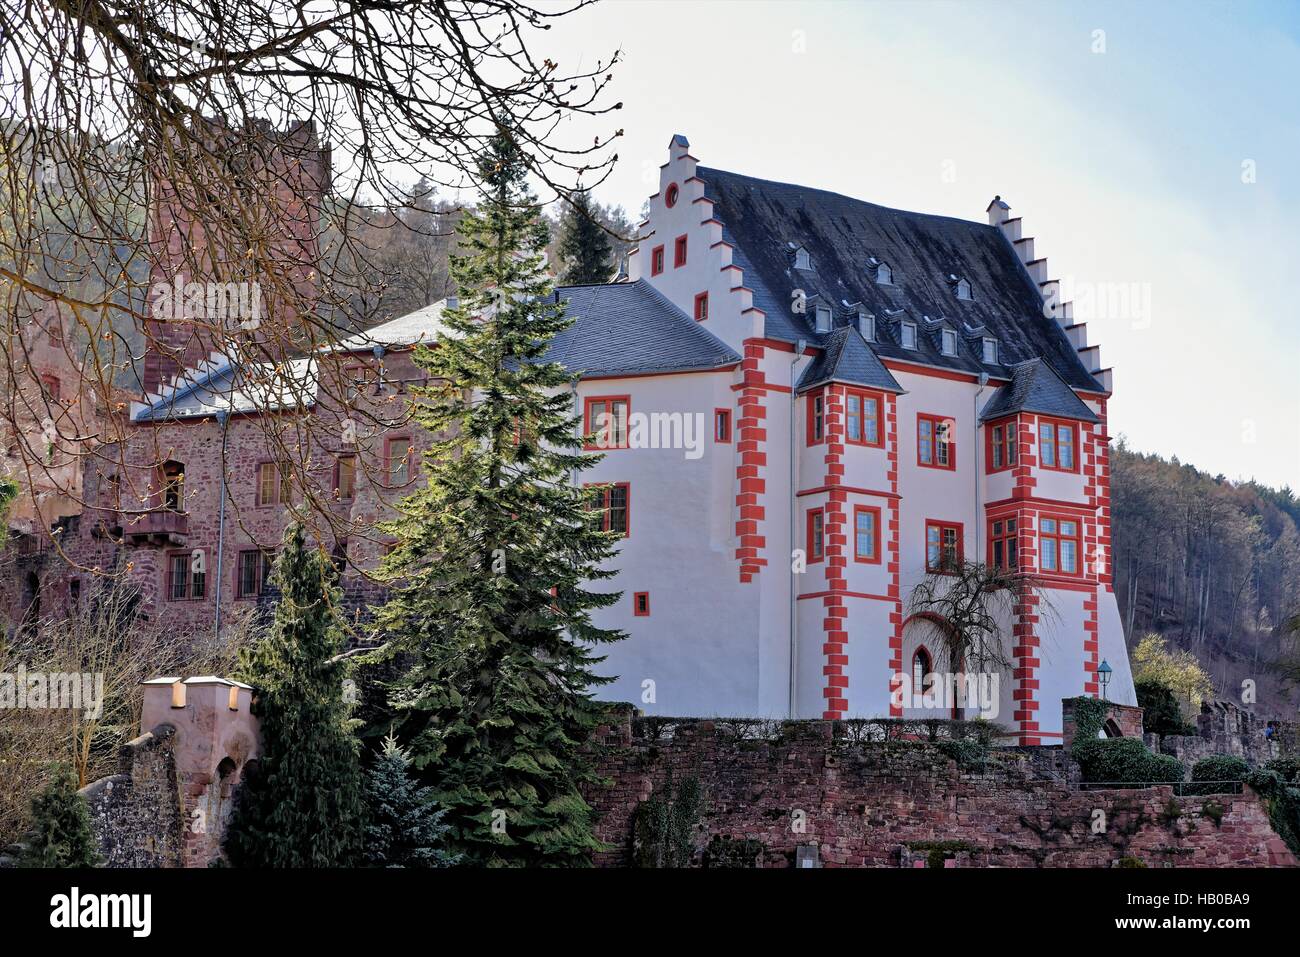 Castle Mildenburg in Mitenberg Stock Photo